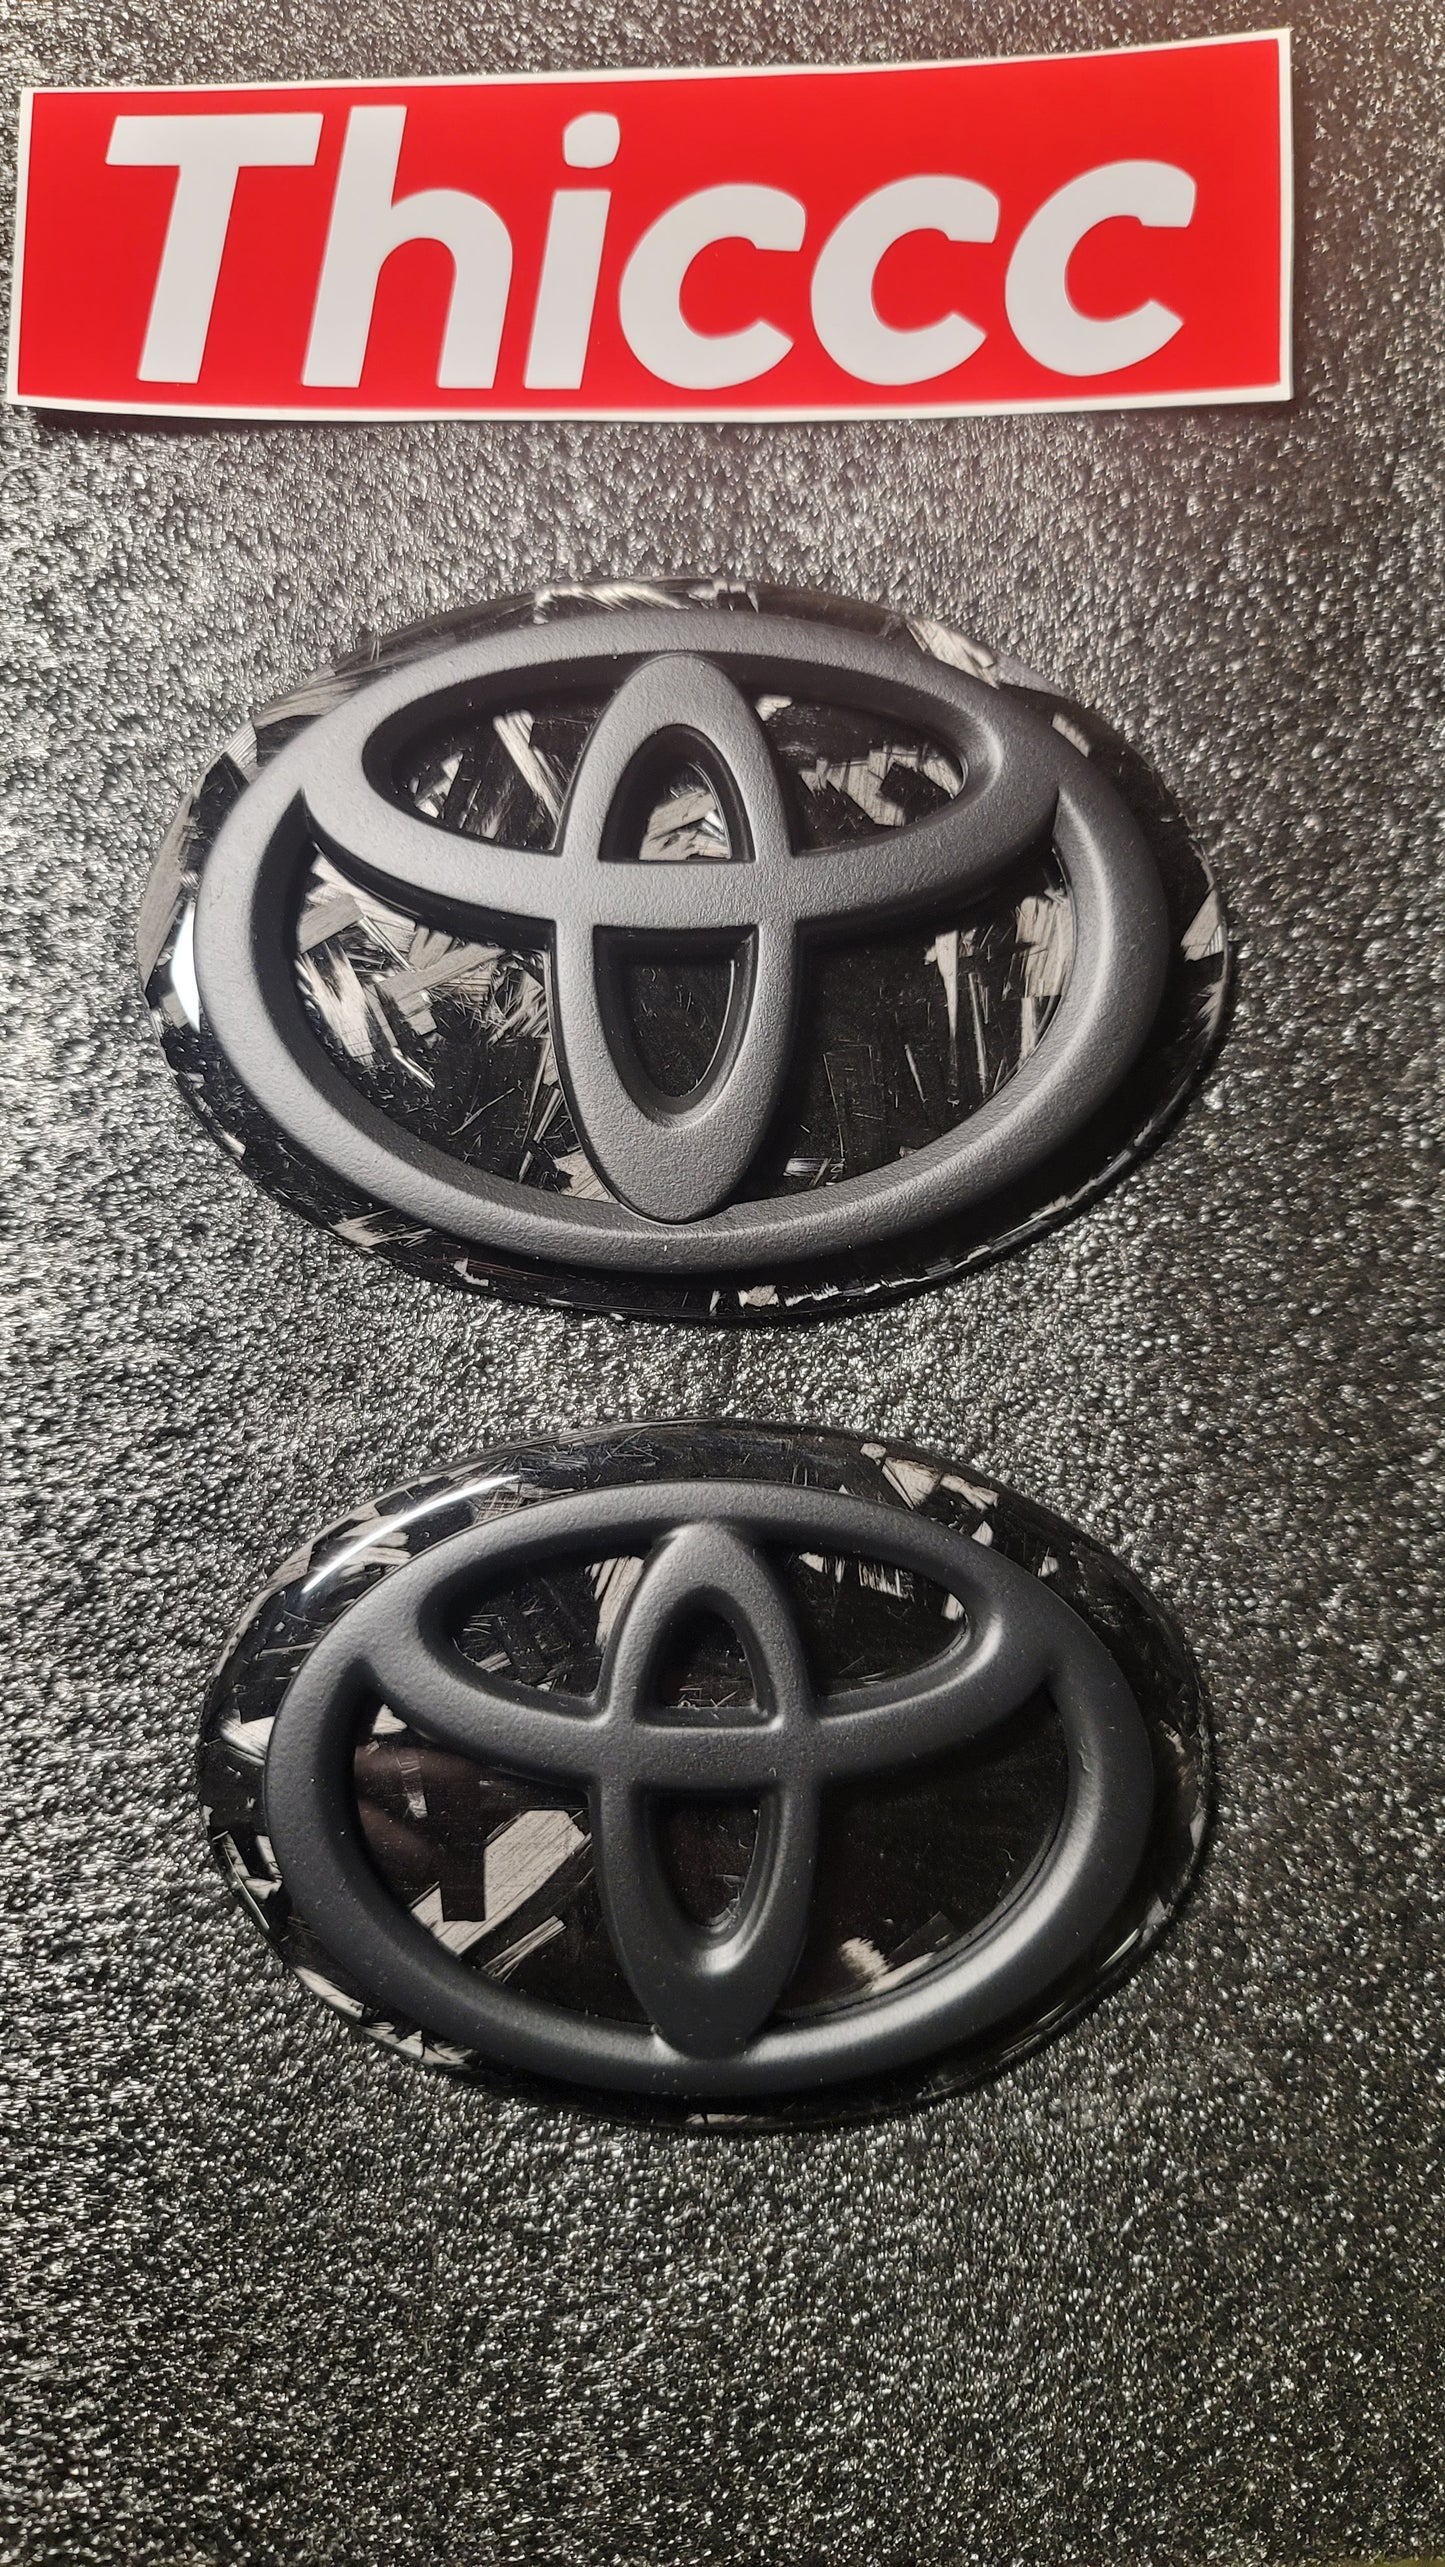 Toyota Supra Forged Carbon Fiber Badges MK5